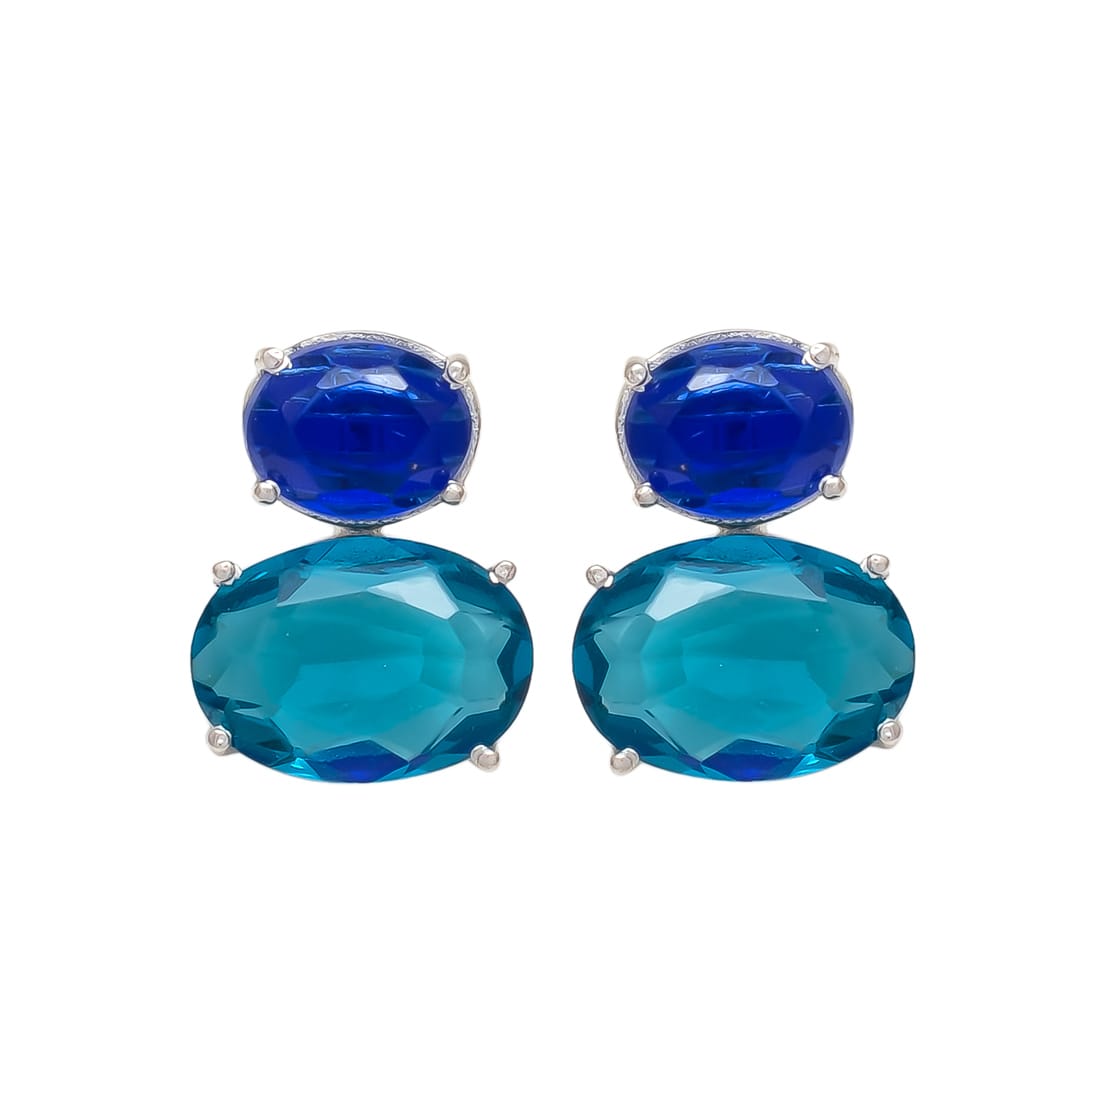 Melange Mia Sterling Silver Bubble Earrings - London Blue Topaz & Sapphire Hydro